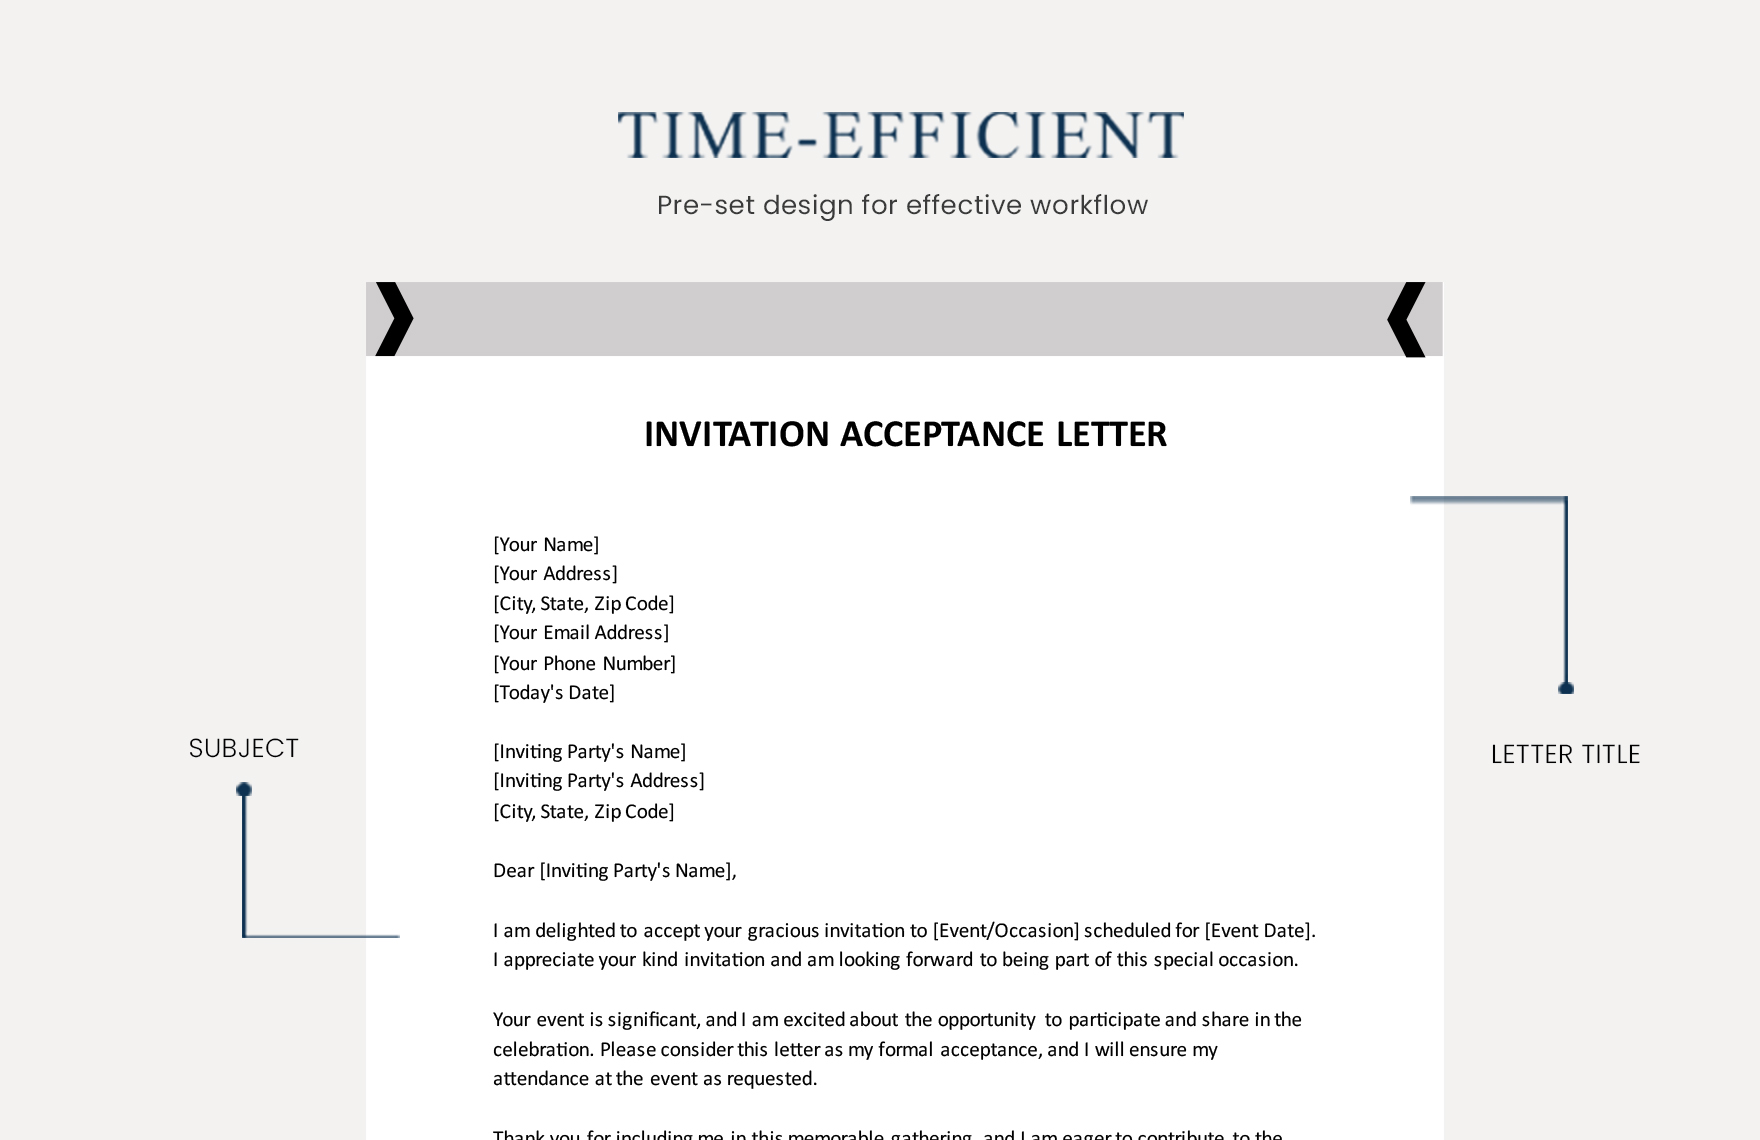 Invitation Acceptance Letter